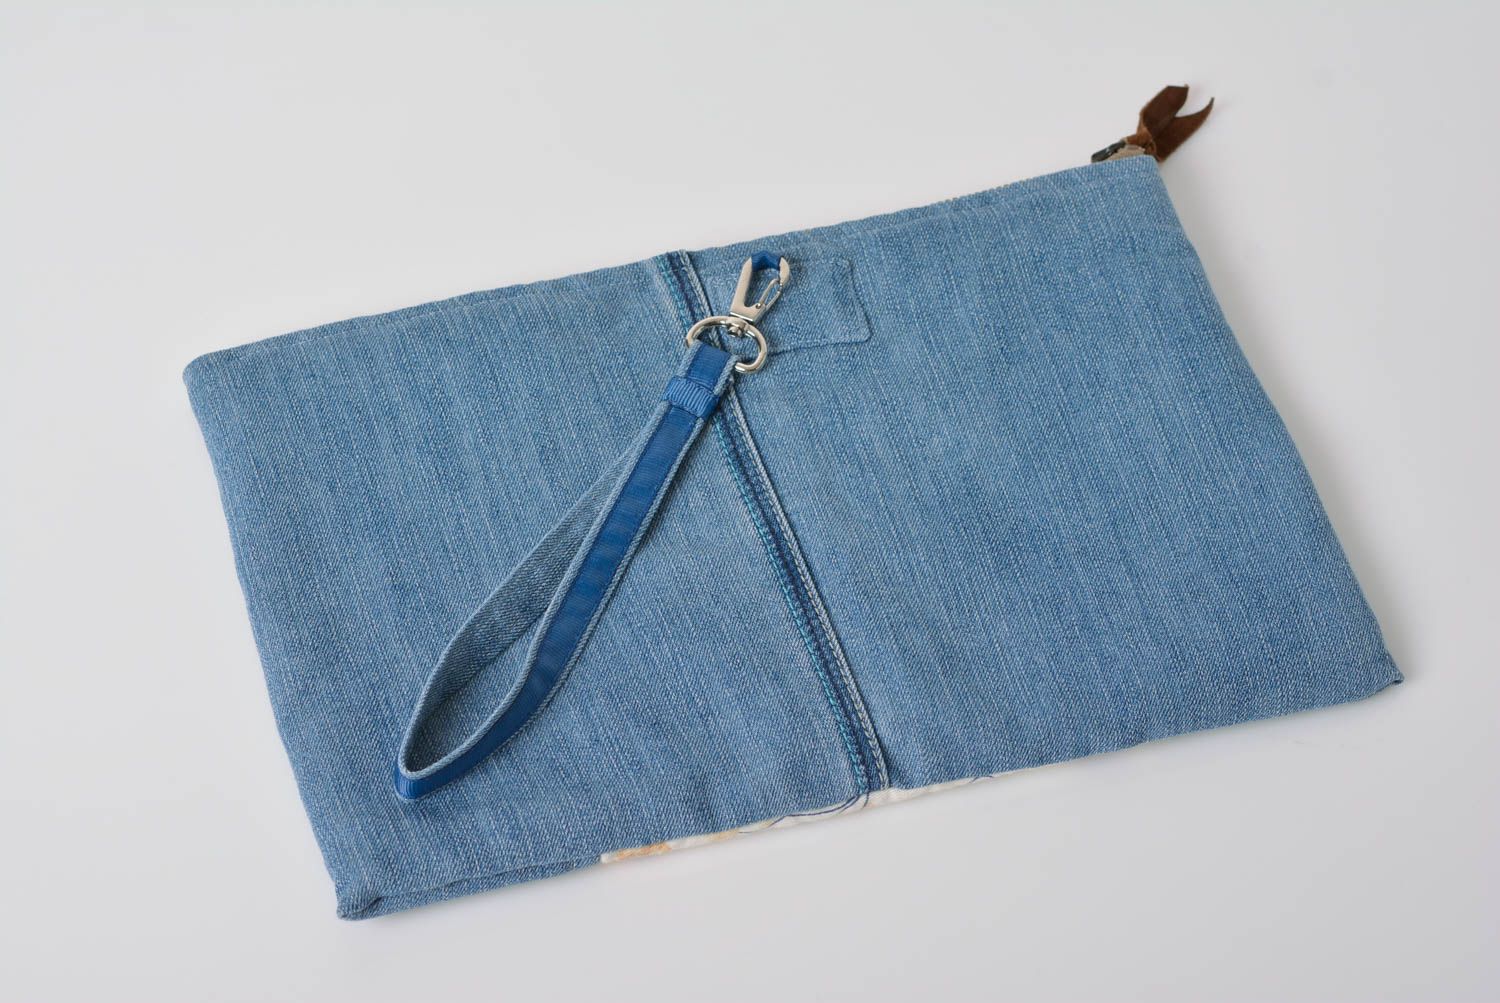 Small handmade fabric clutch bag designer female blue purse evening accessory photo 2